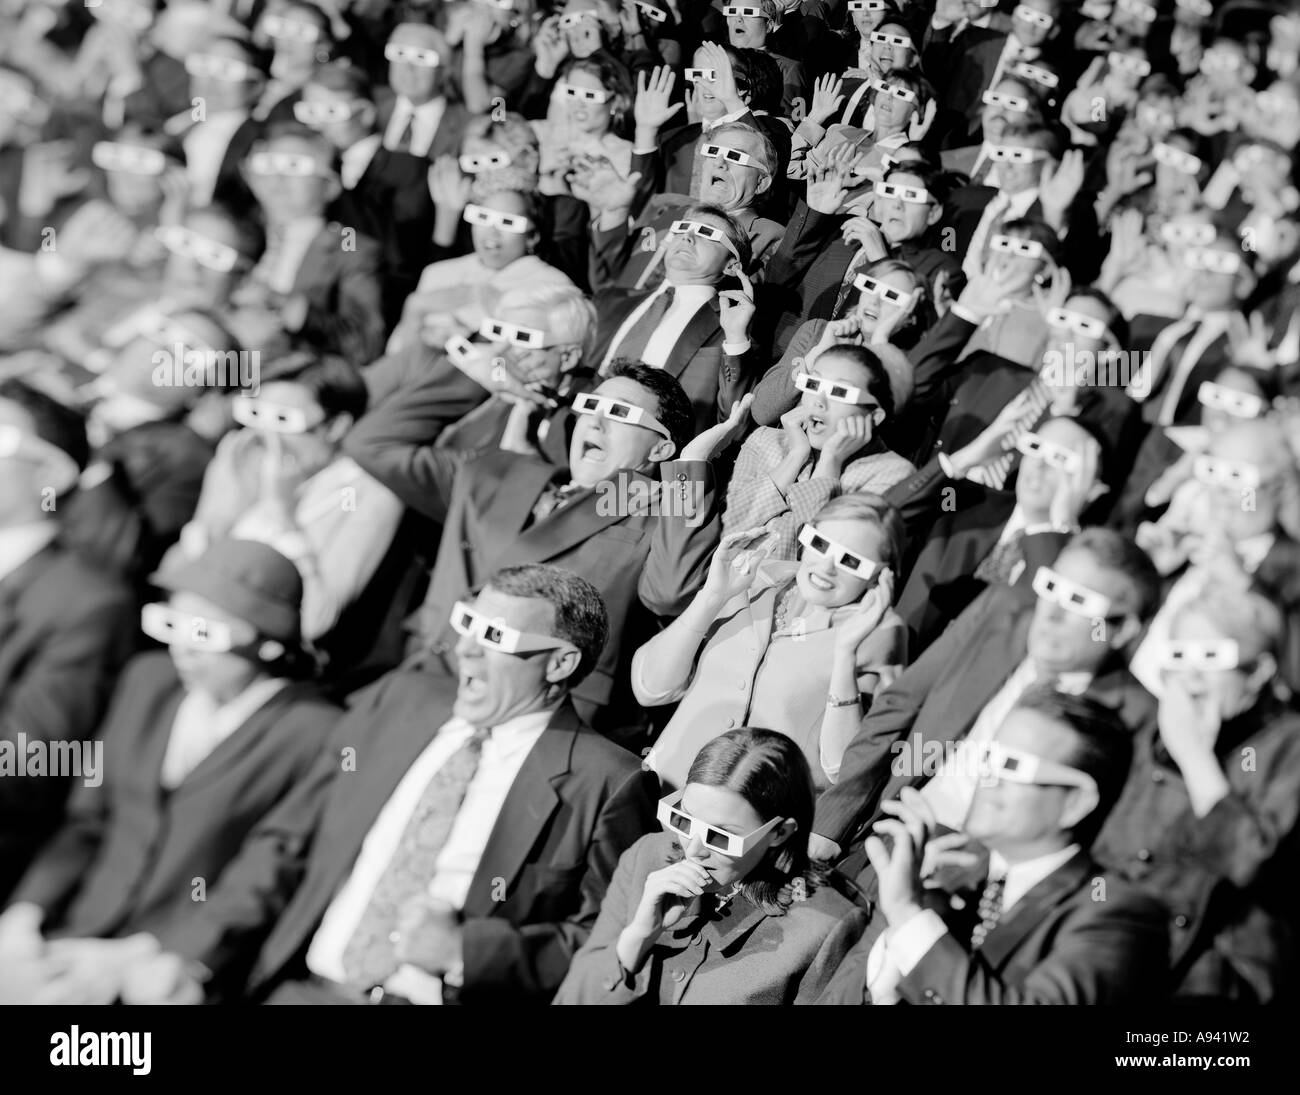 Portrait d'un groupe de spectateurs assis dans une salle de cinéma portant des lunettes 3-D Banque D'Images